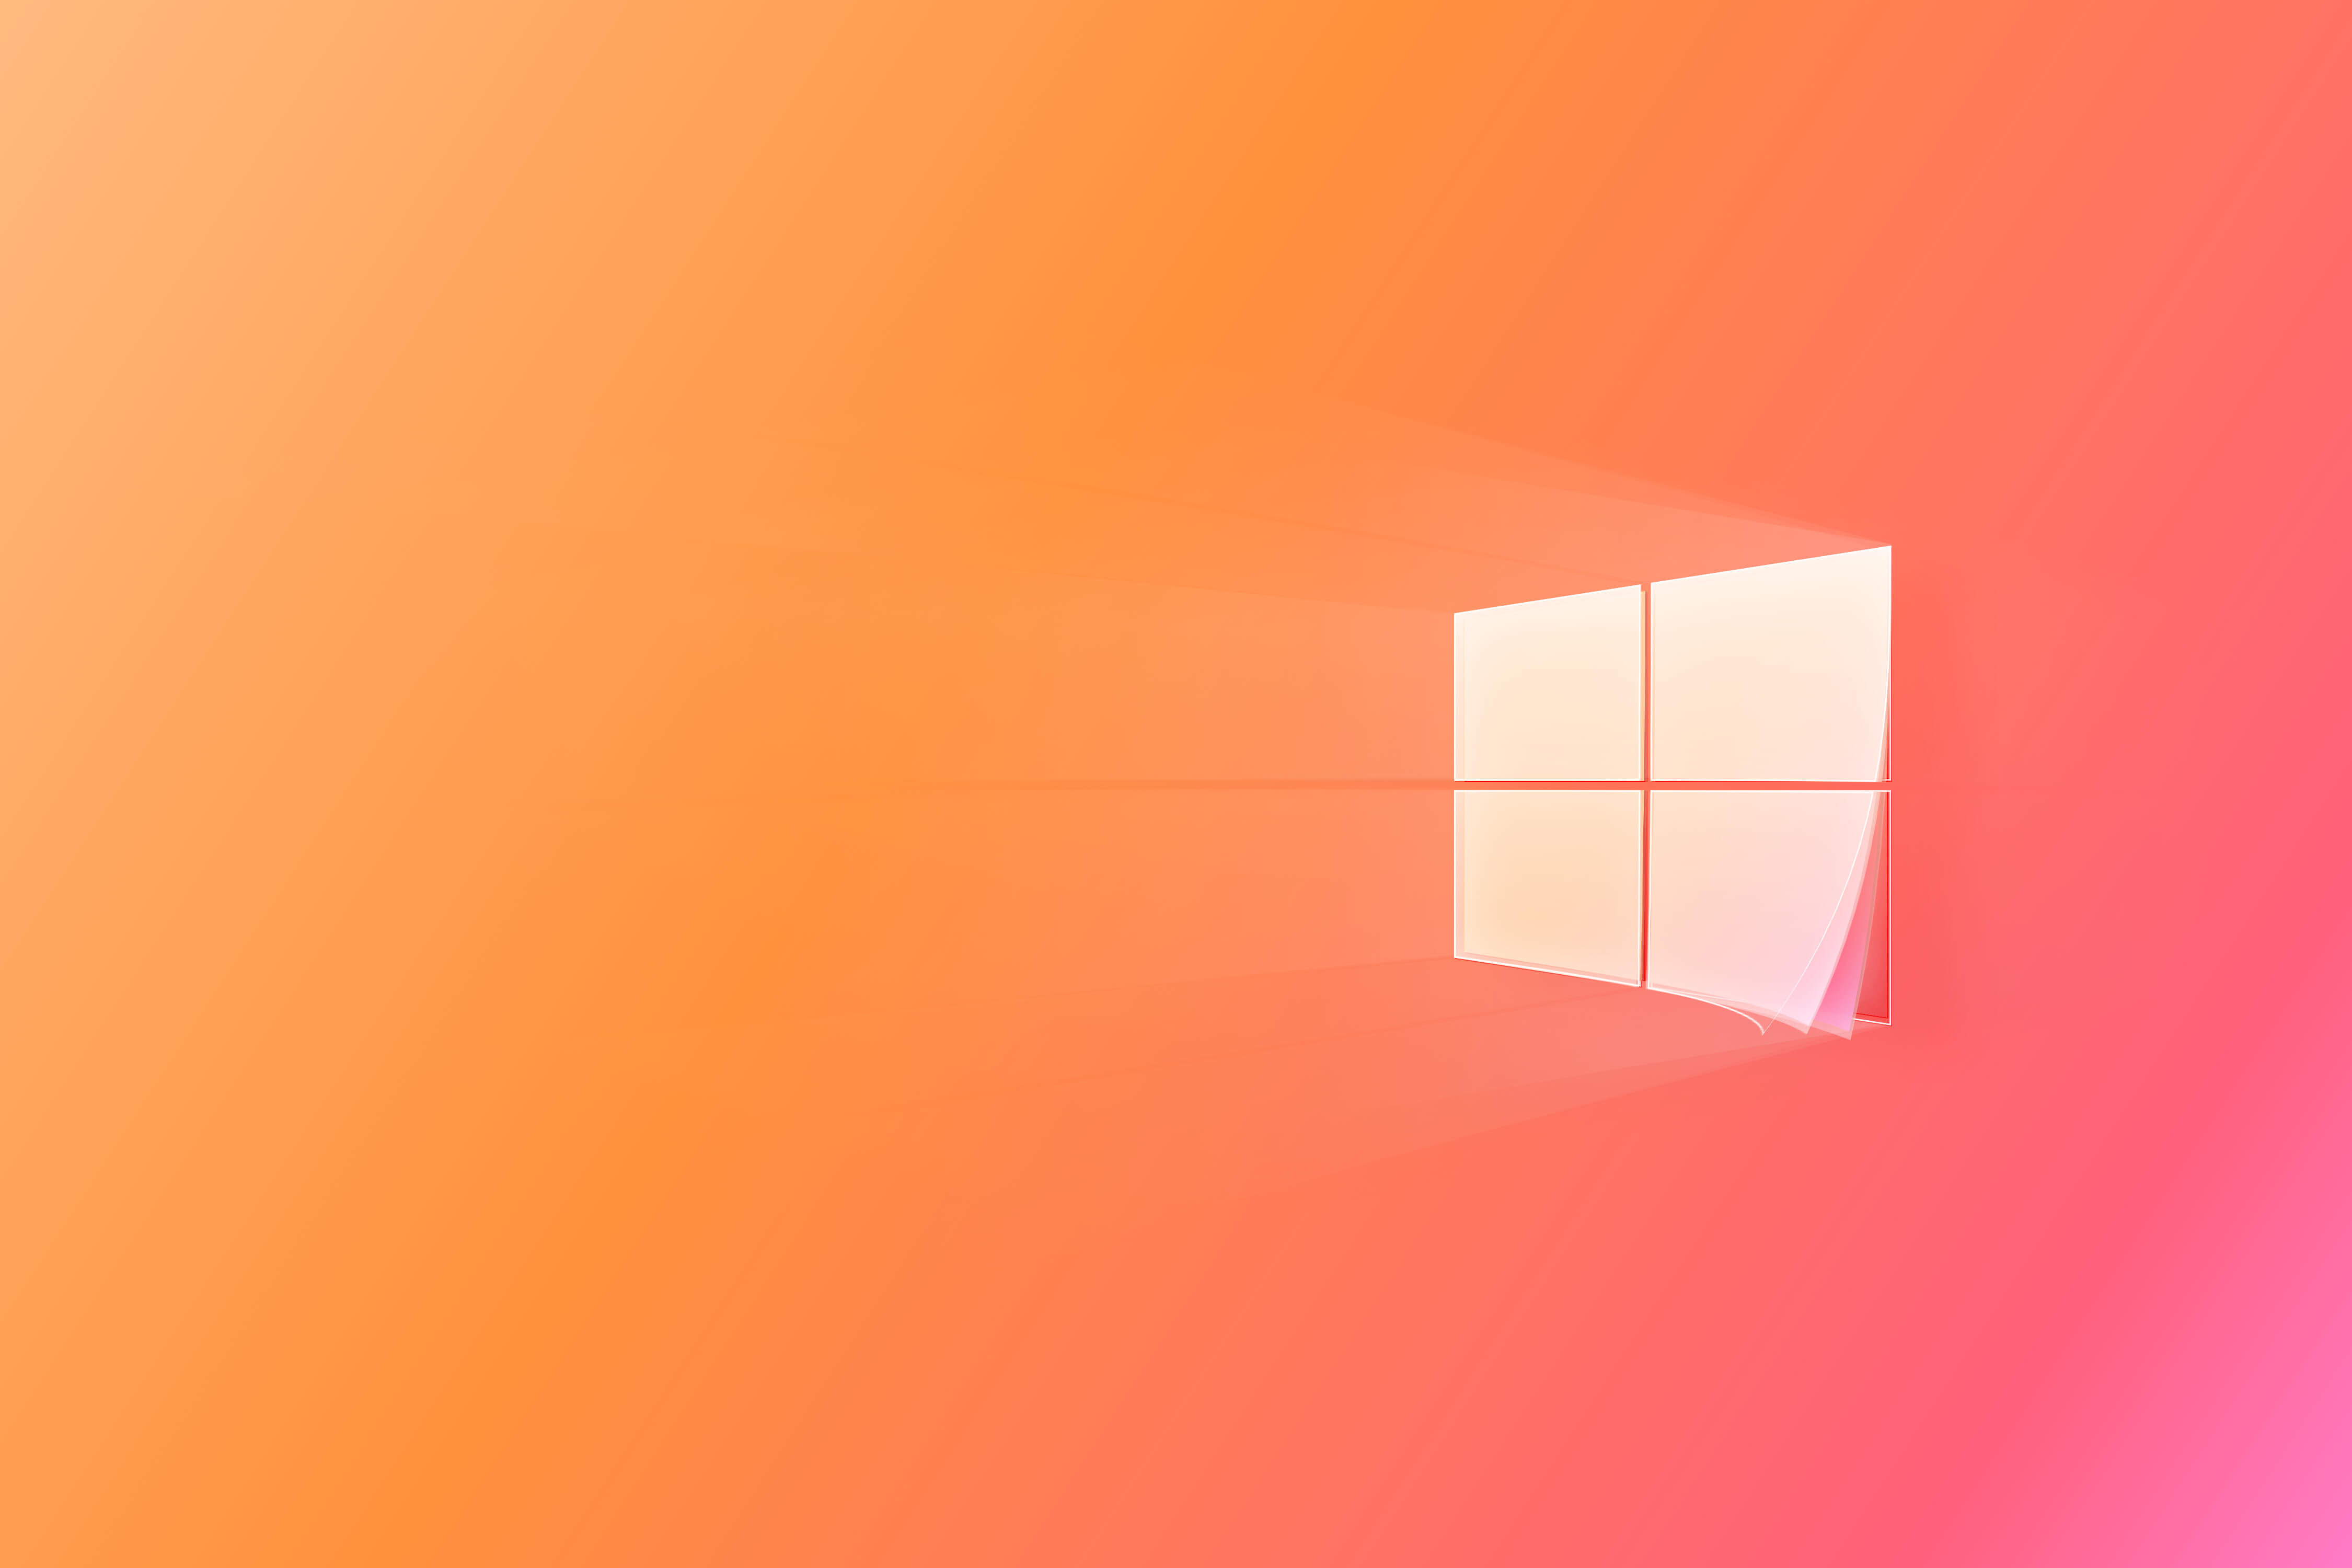 Bộ hình nền mặc định trên Windows 11 với độ phân giải cao  Code Pro  Chia  sẻ kiến thức tư duy sáng tạo